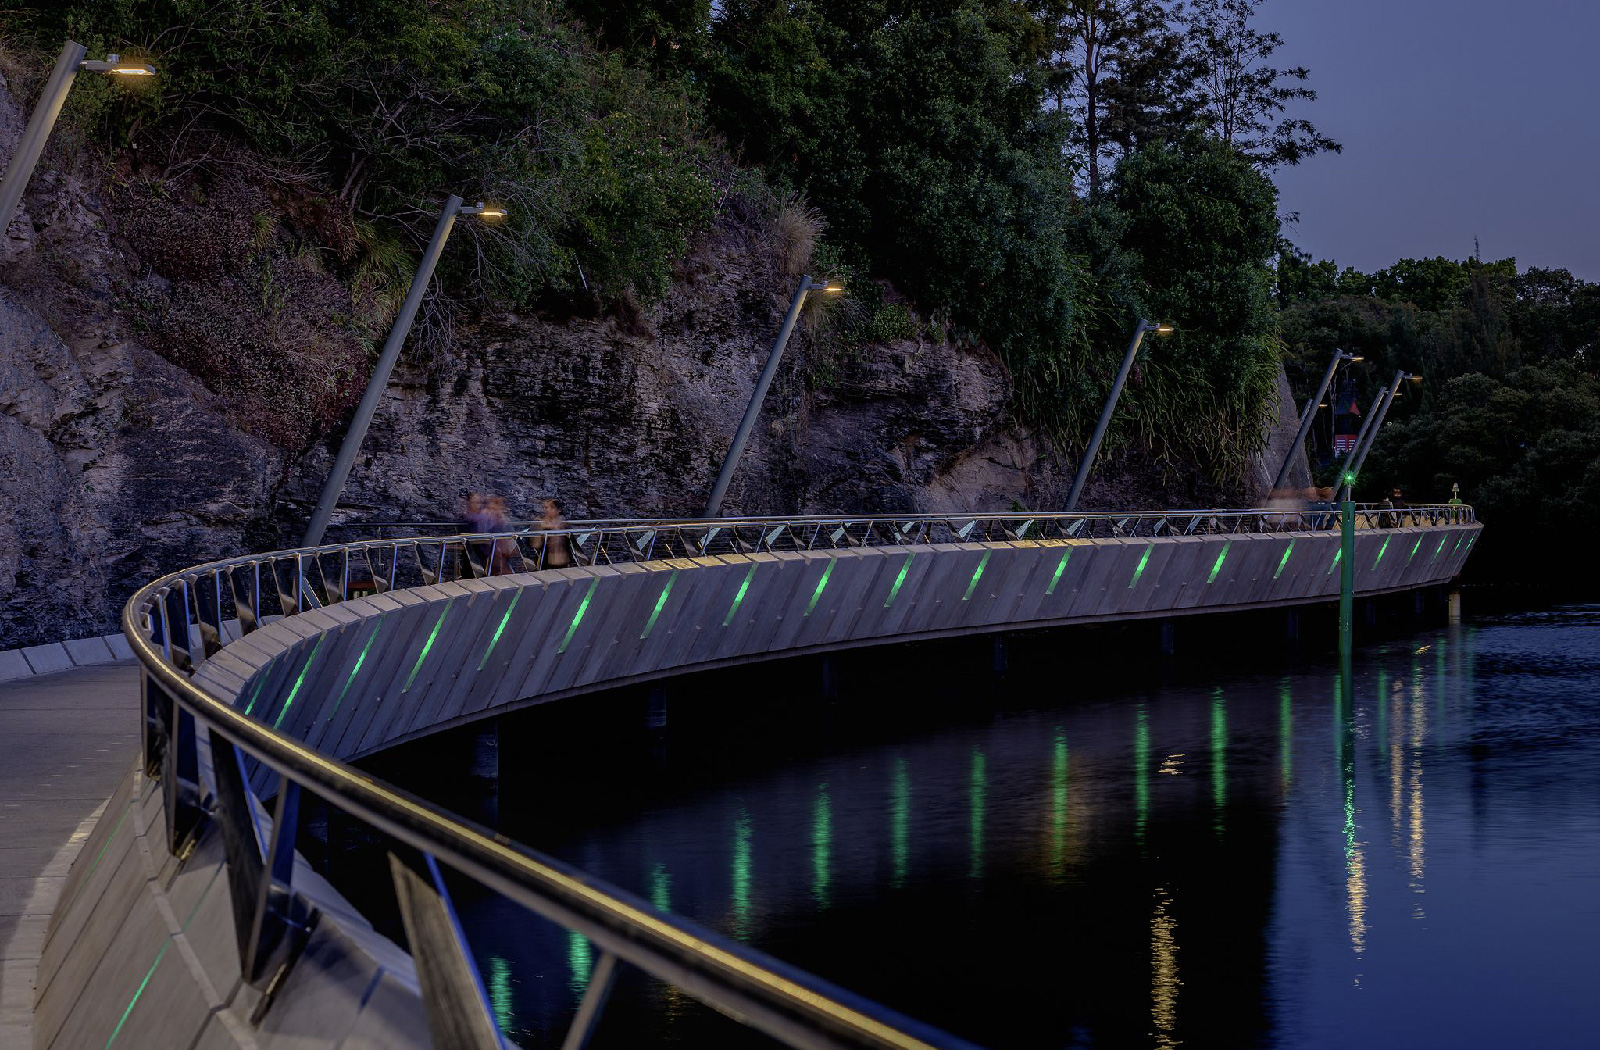 Parramatta Escarpment Boardwalk at night- Urban infrastructure cycleway by McGregor Westlake Architecture